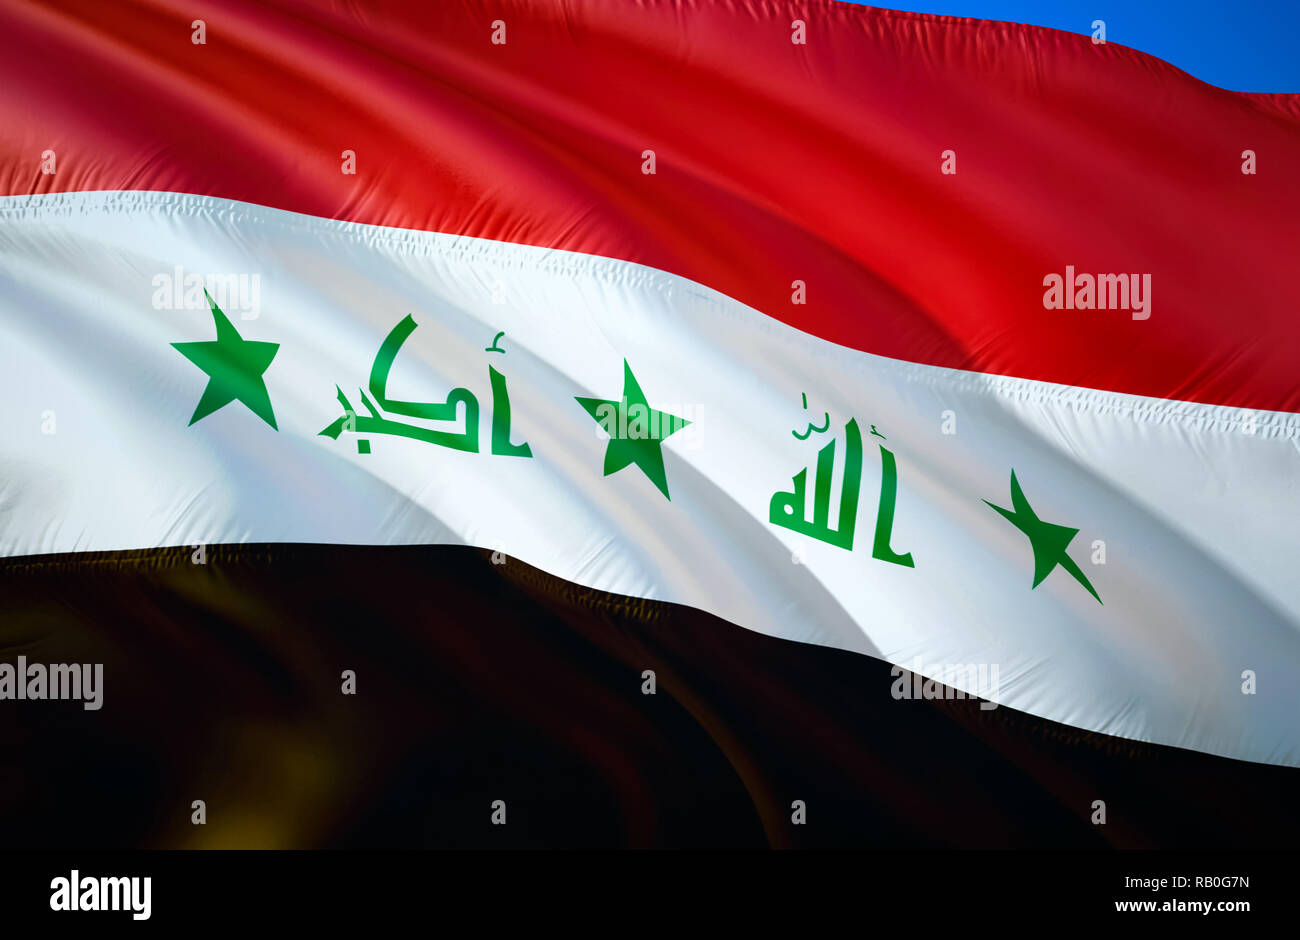 Drapeau de l'Irak. Waving Flag 3D design. Le symbole national de l'Iraq, rendu 3D. Les couleurs nationales de l'Iraq avec 3D design fond signe. Ruban 3D, wall Banque D'Images